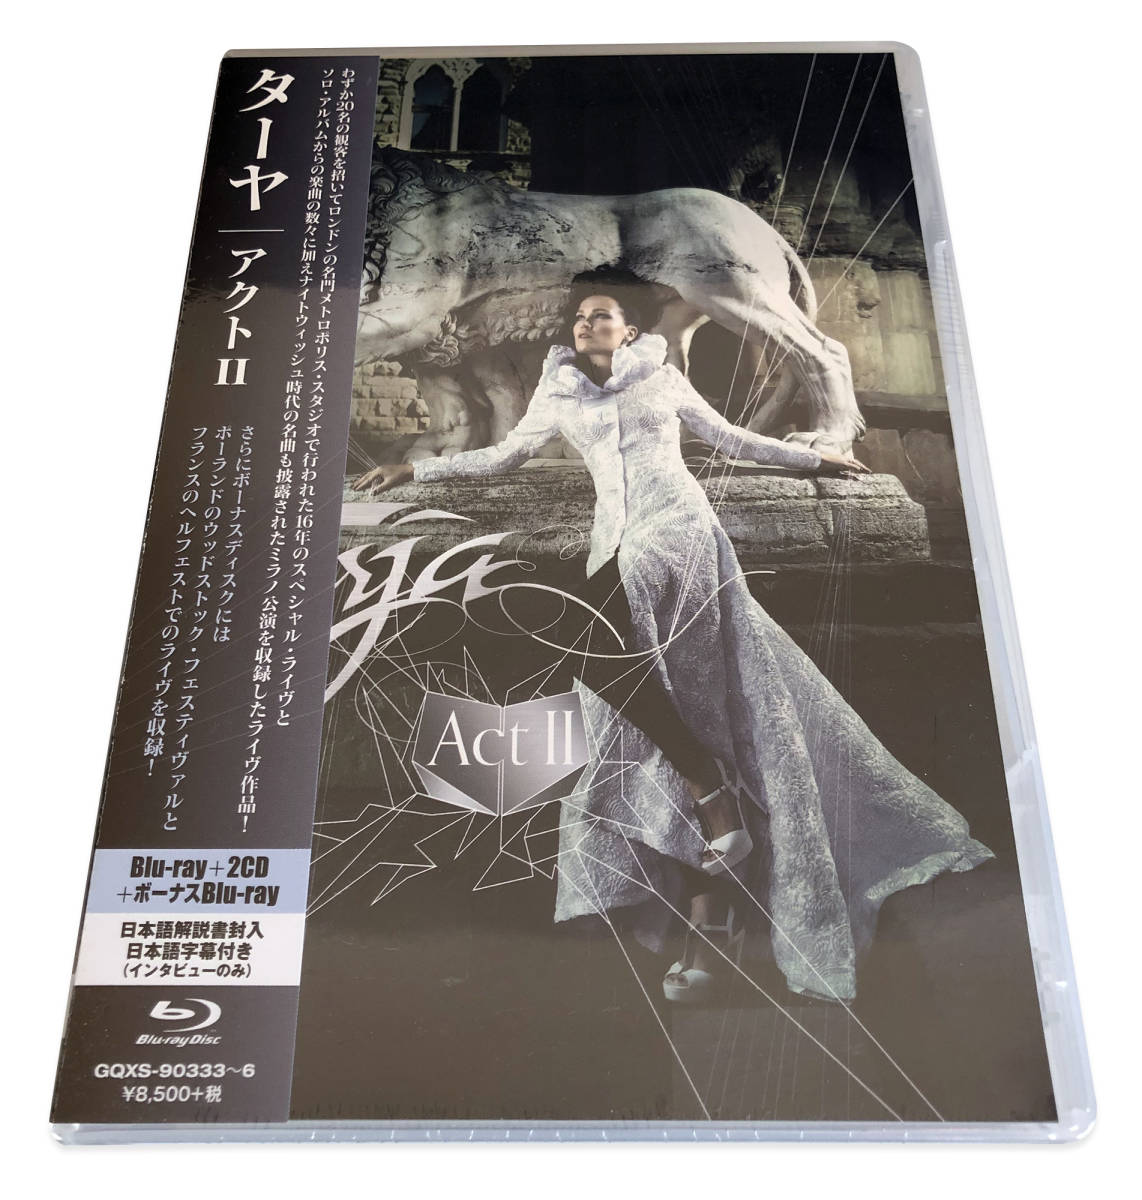 ターヤ/アクト II【完全生産限定盤Blu-ray+2枚組CD+ボーナスBlu-ray】Taya / Act II_画像1